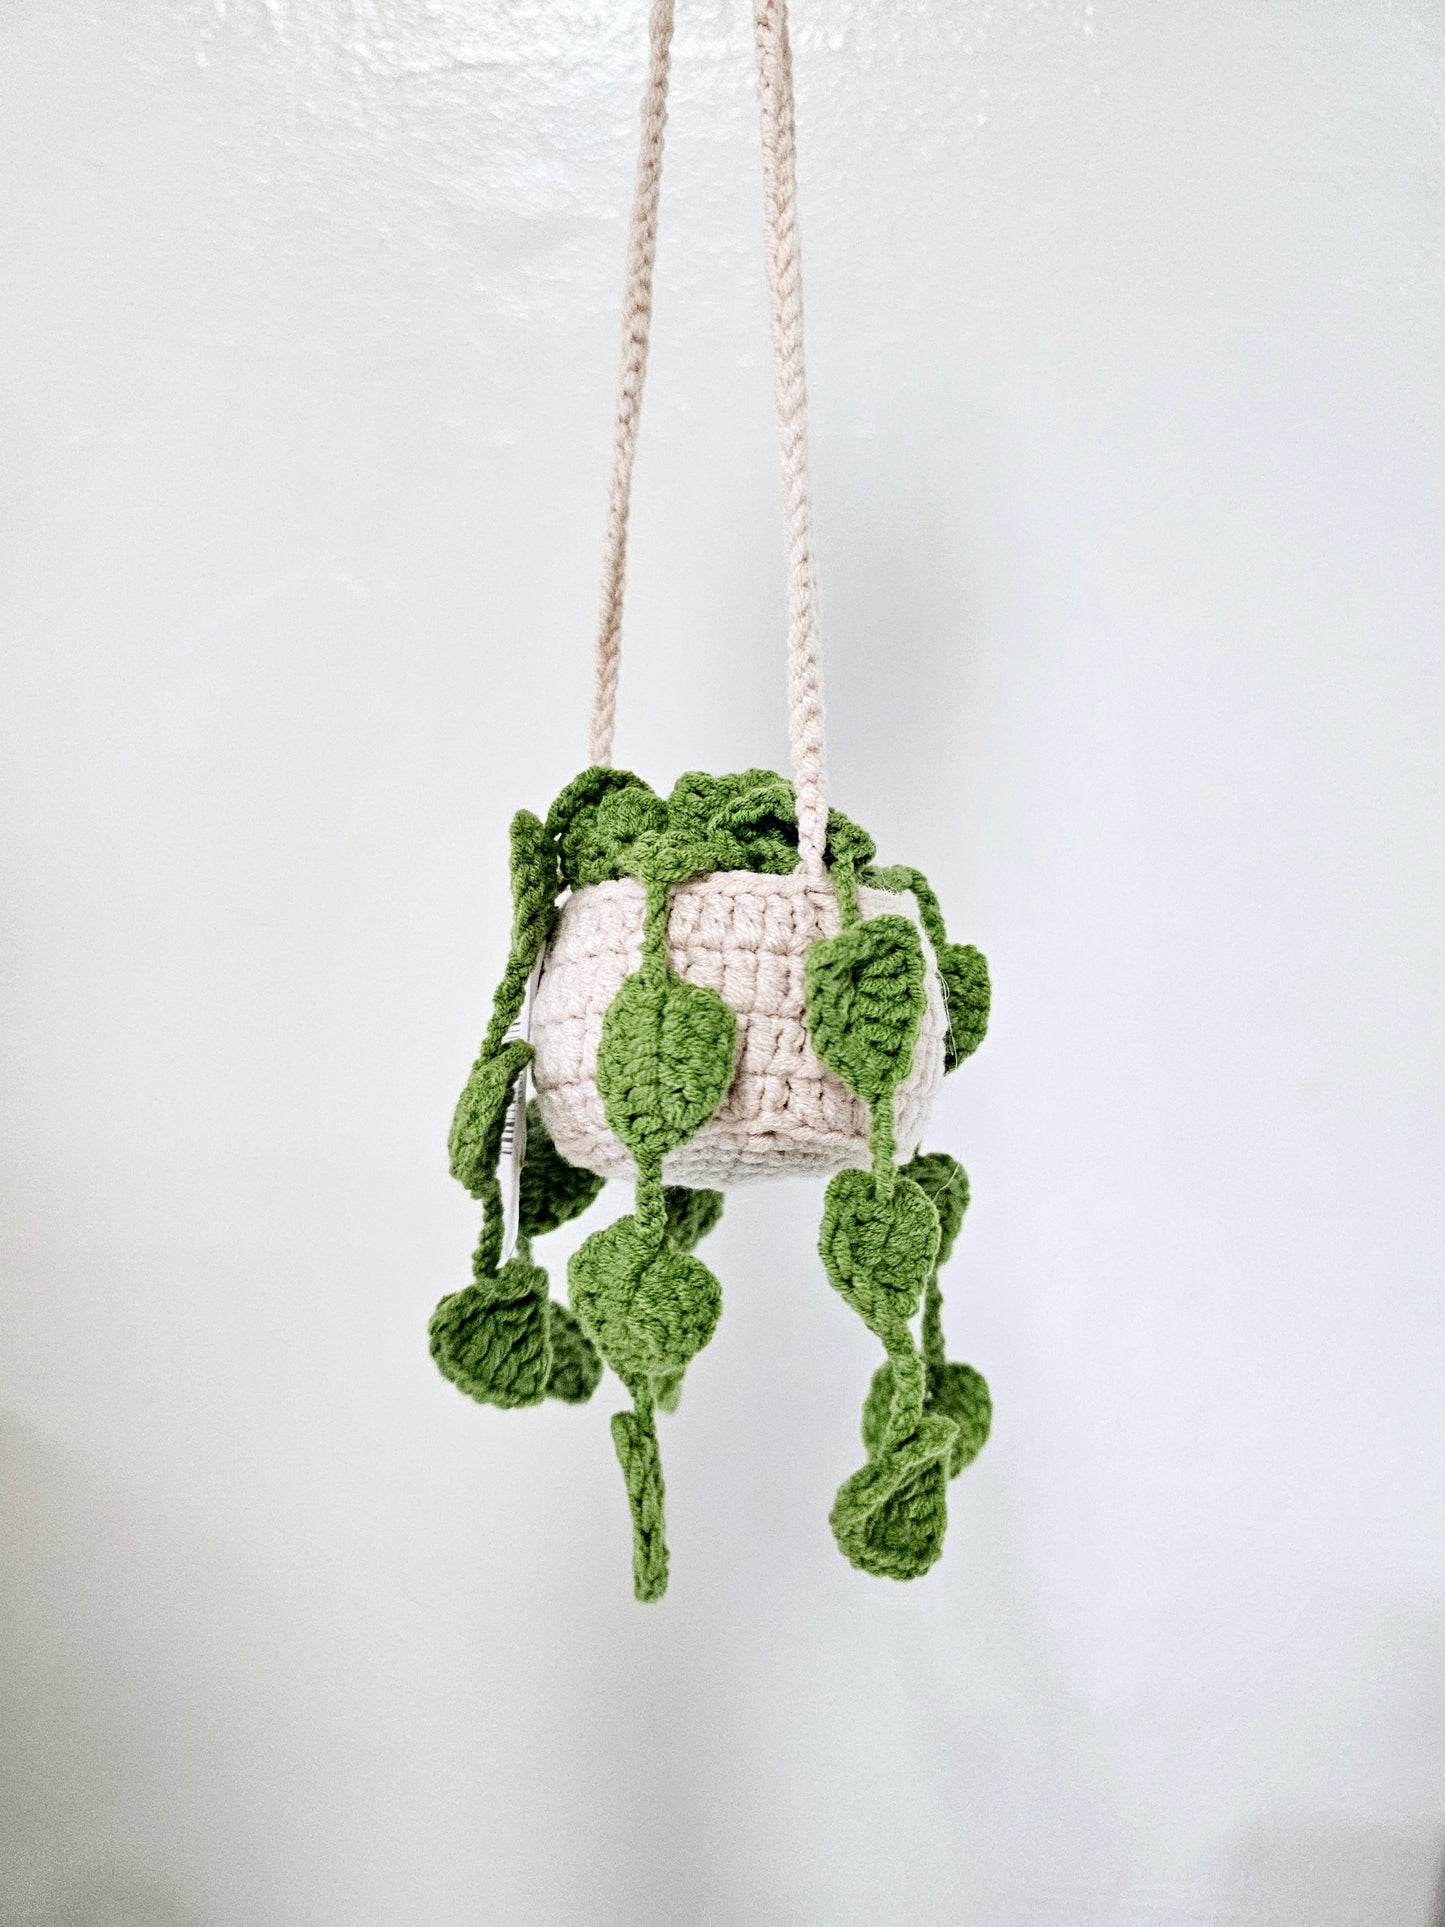 Crochet Plant Hanger